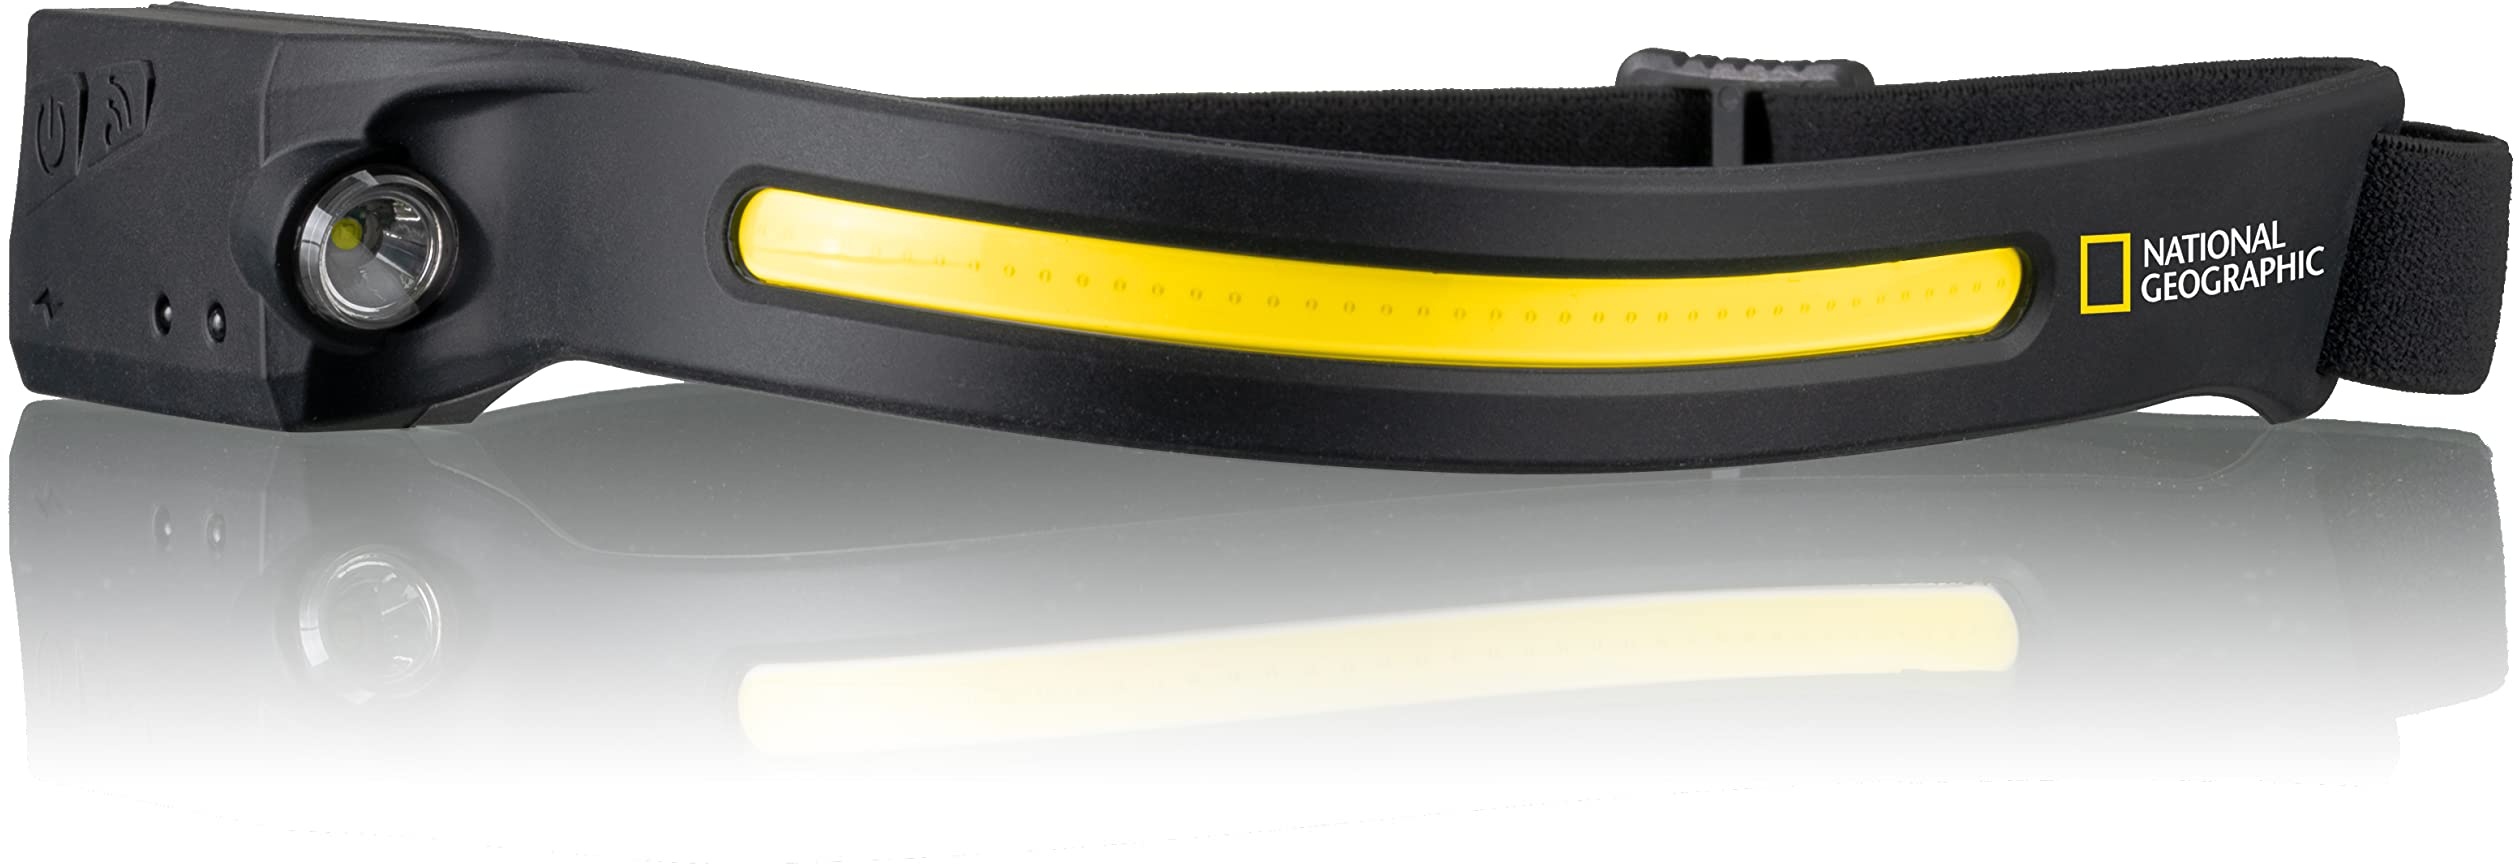 National Geographic Iluminos Stripe Stirnlampe mit LED-Streifen, wiederaufladbarem Akku und IR-Sensor zum Ein-/Ausschalten per Handgeste